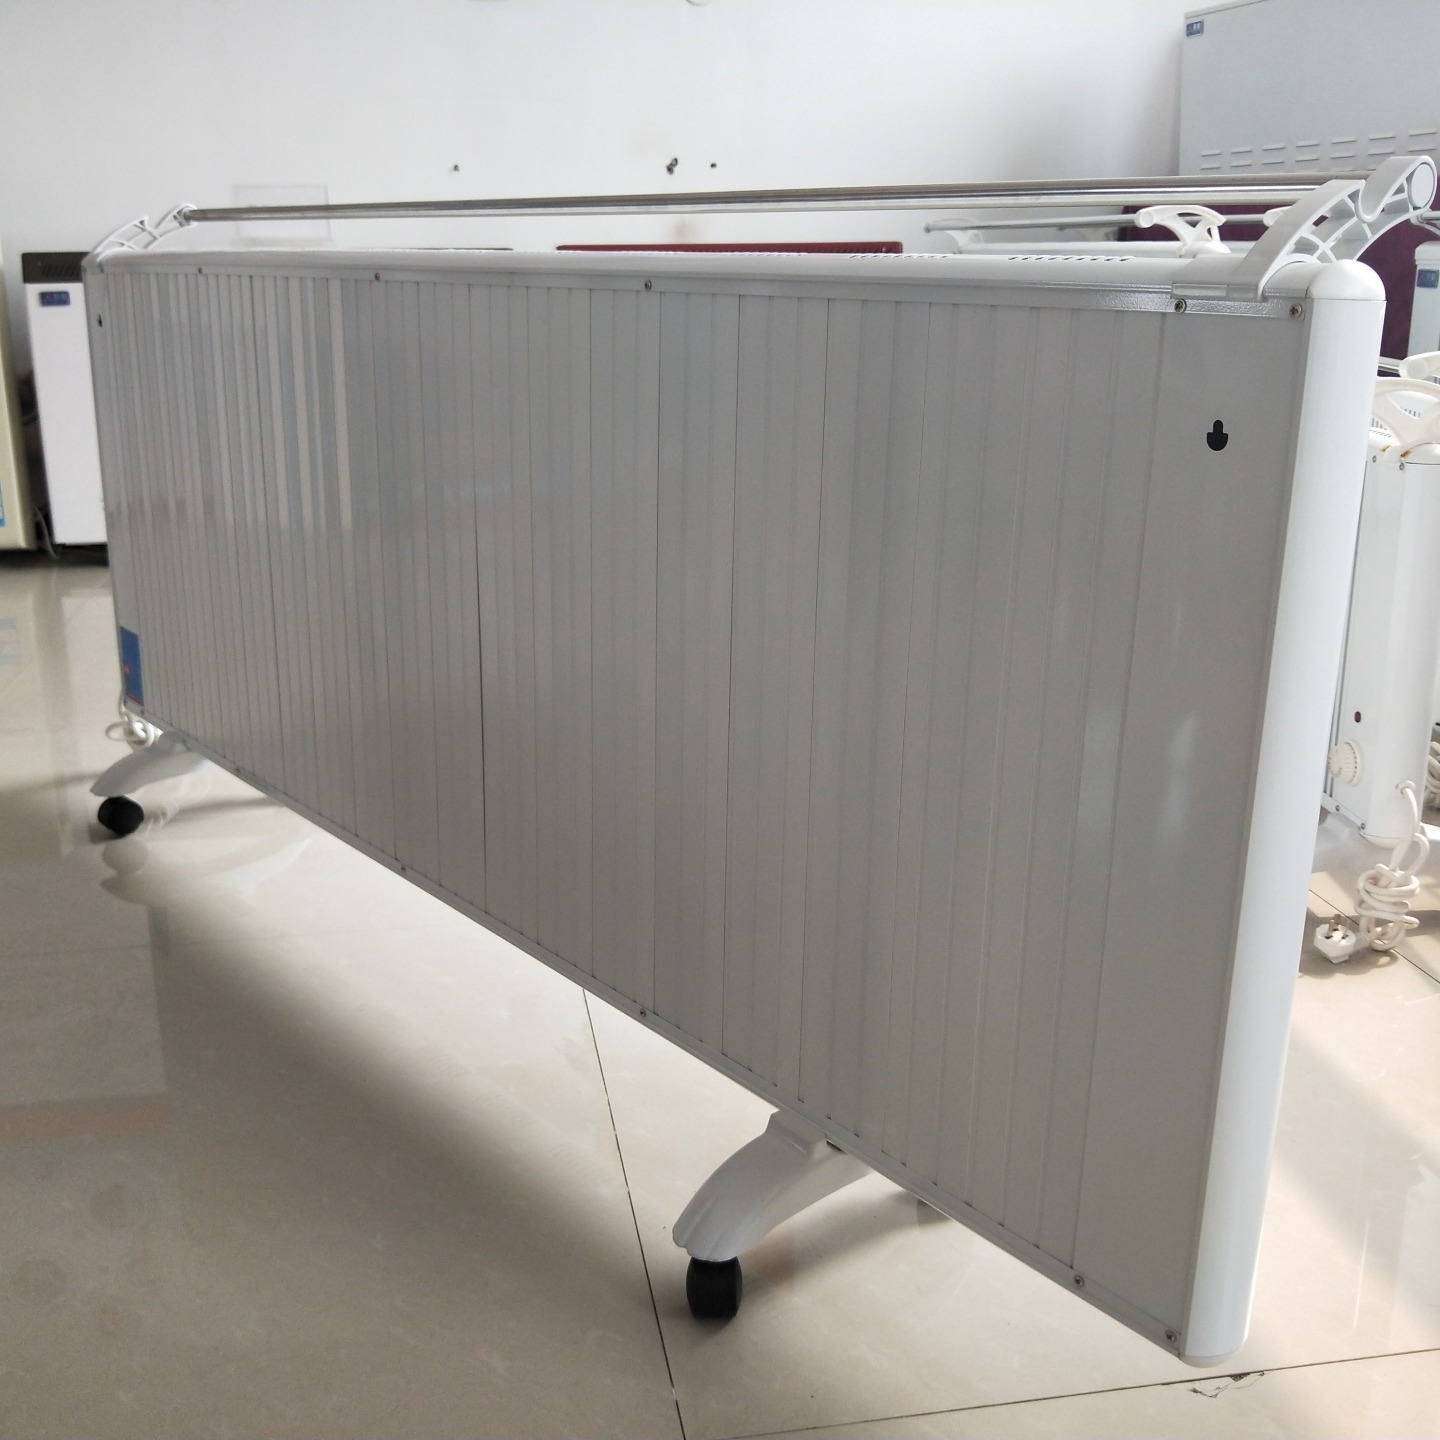 鑫达美裕供应生产 GRTJ-2000碳晶电暖器 落地式电暖器 壁挂式落地式可移动取暖器图片